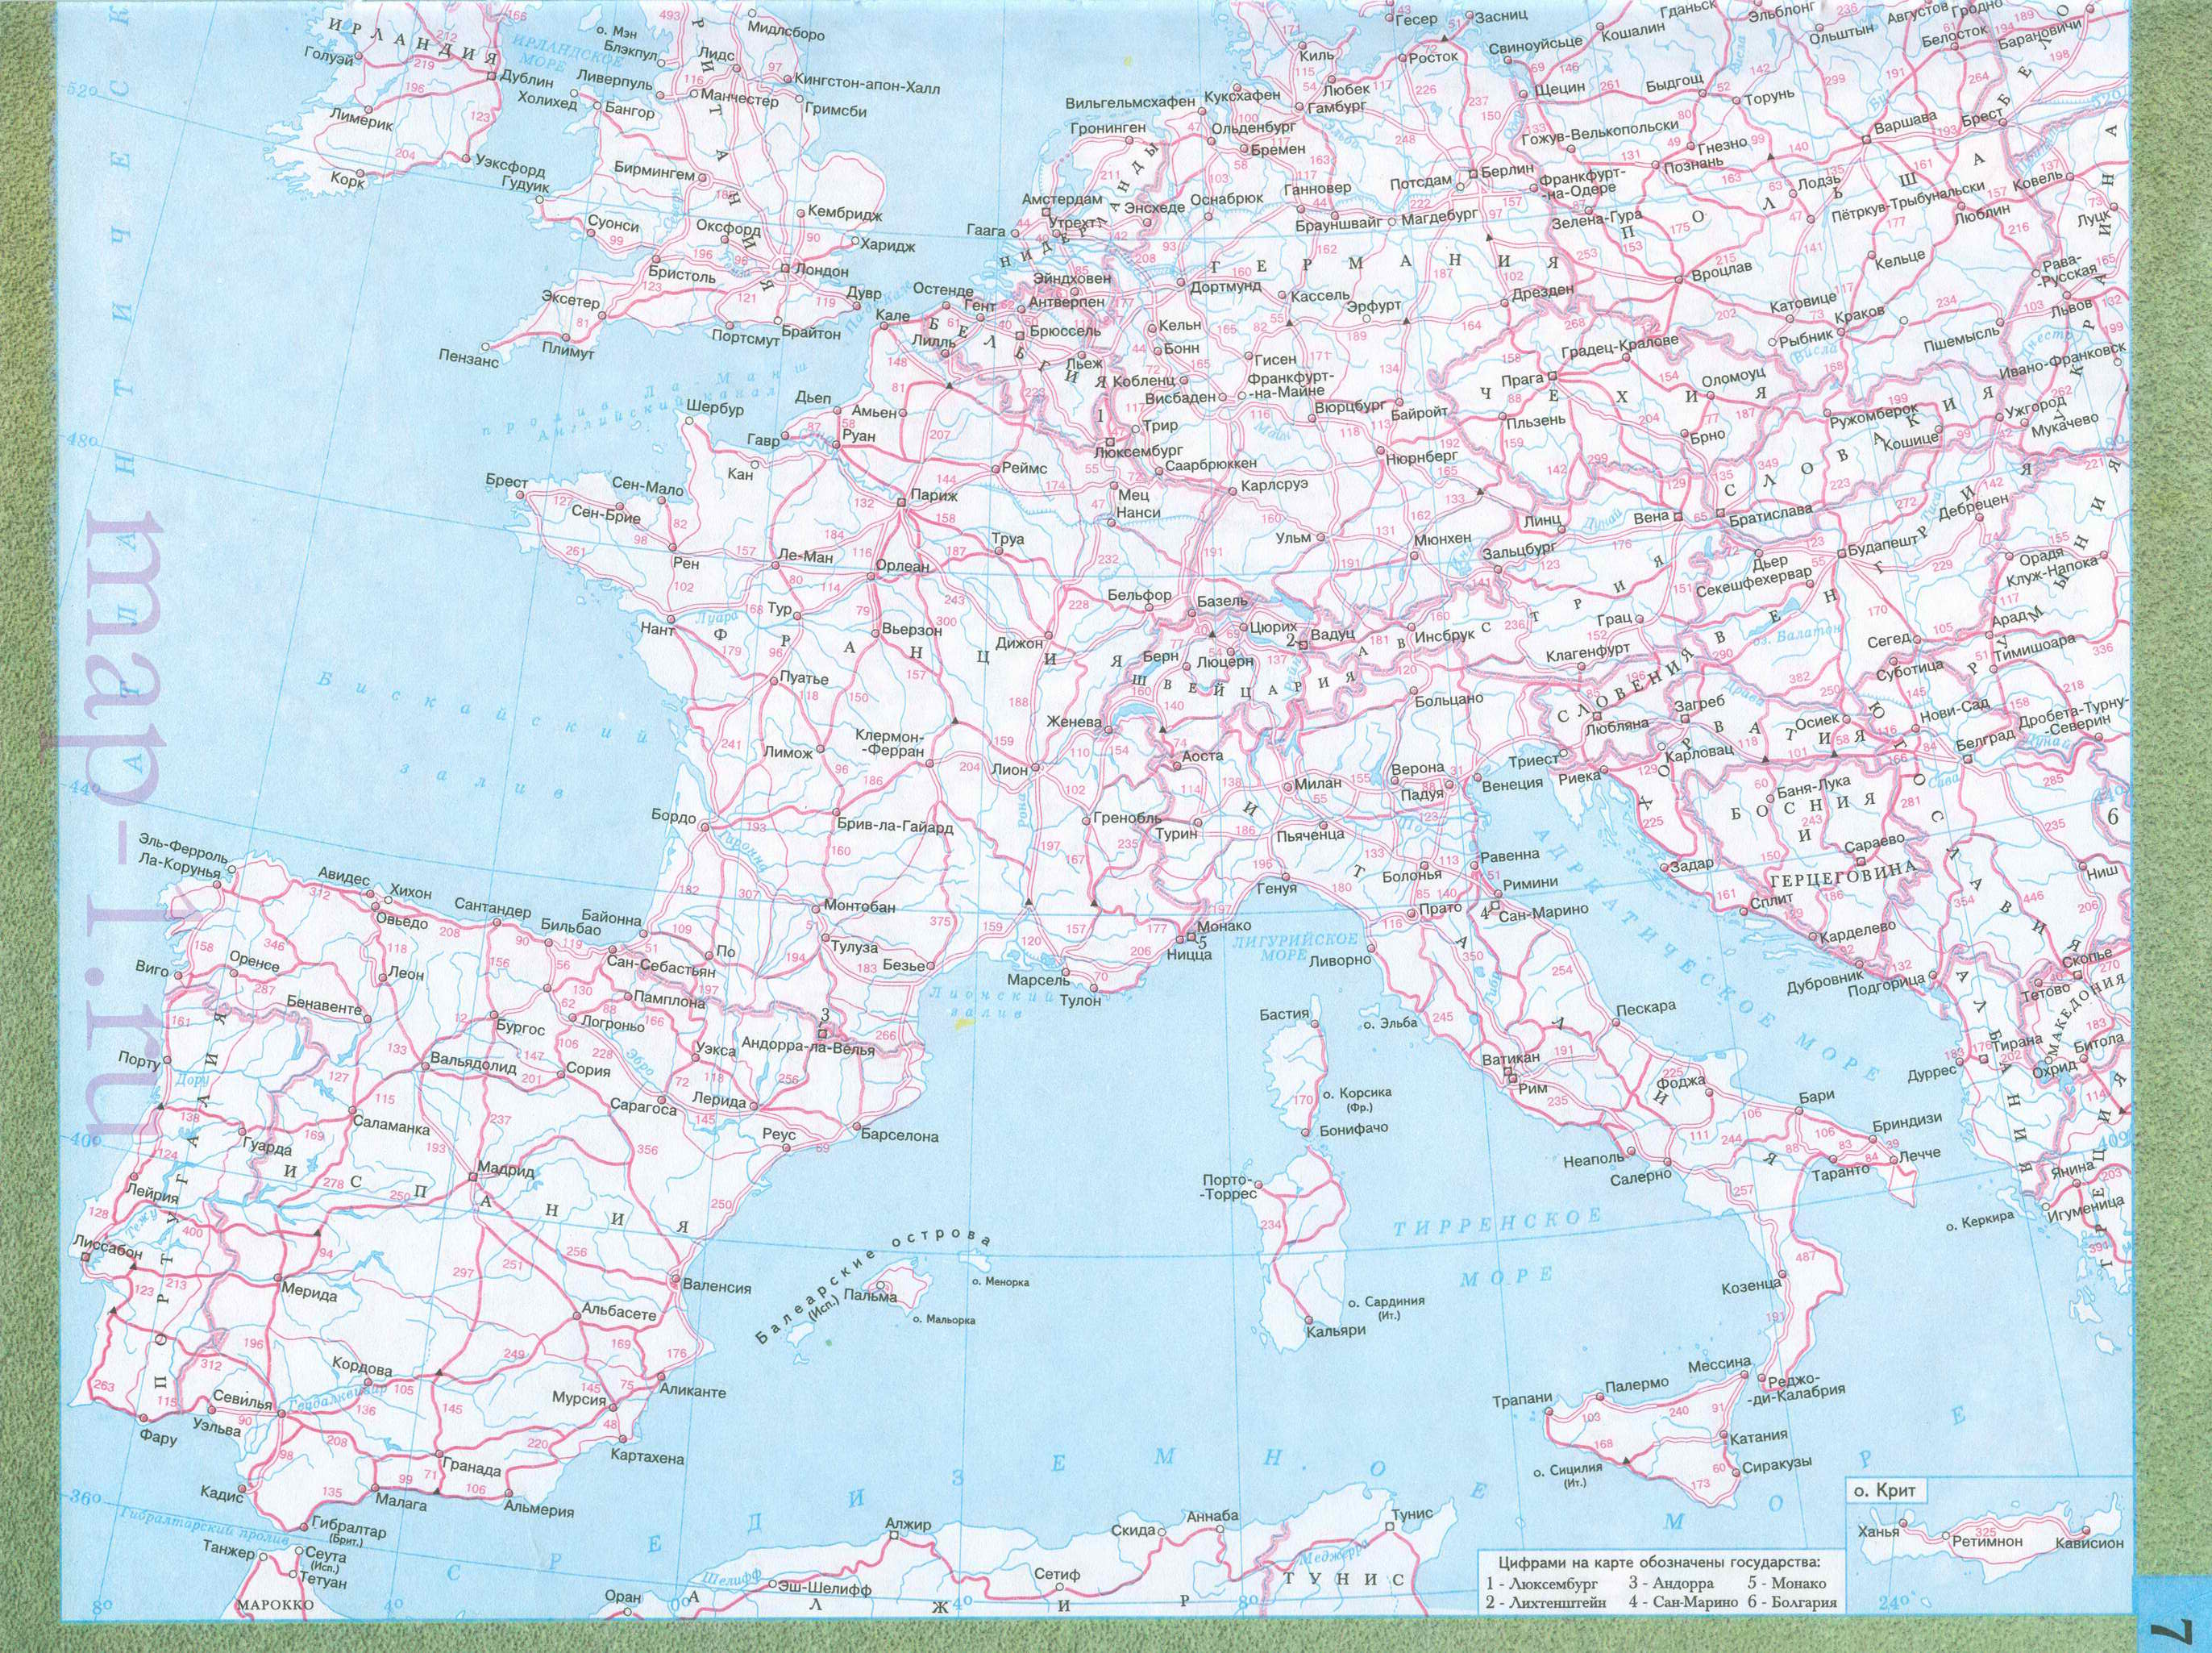  Карта Европы. Подробная карта Европы на русском языке. Карта авто дорог Западной и Восточной Европы на русском, A1 - 